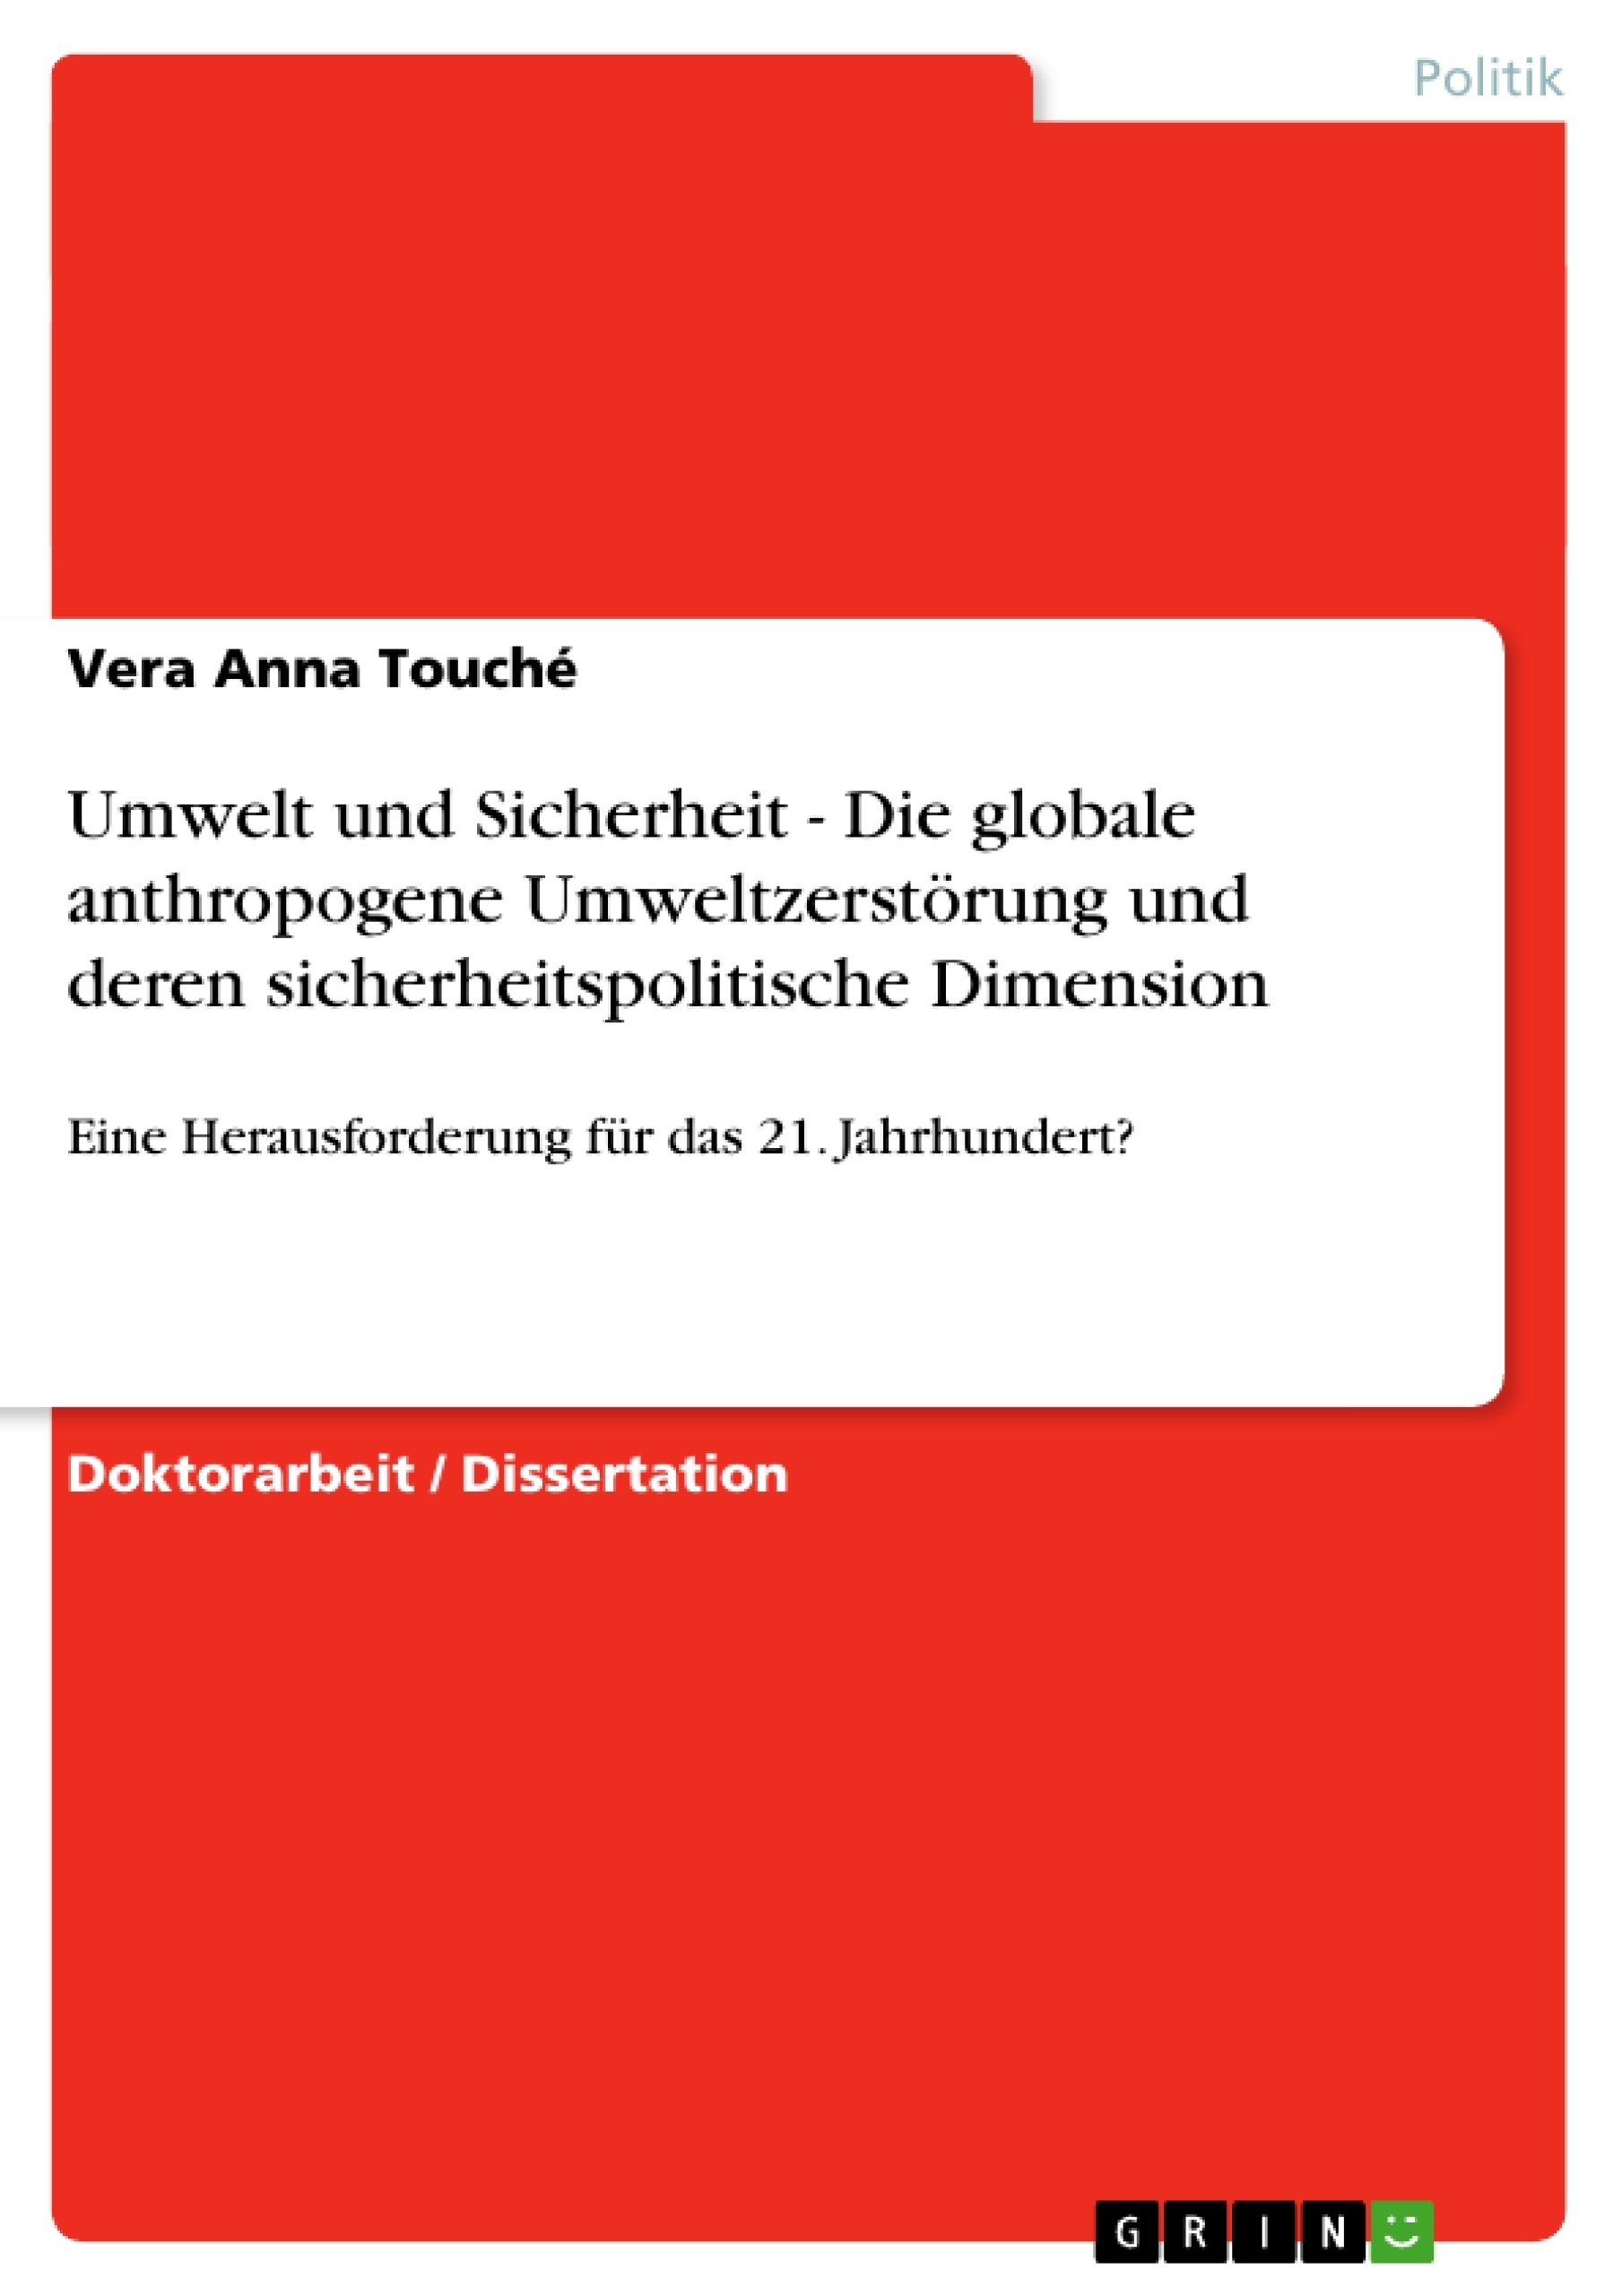 Titel: Umwelt und Sicherheit - Die globale anthropogene Umweltzerstörung und deren sicherheitspolitische Dimension